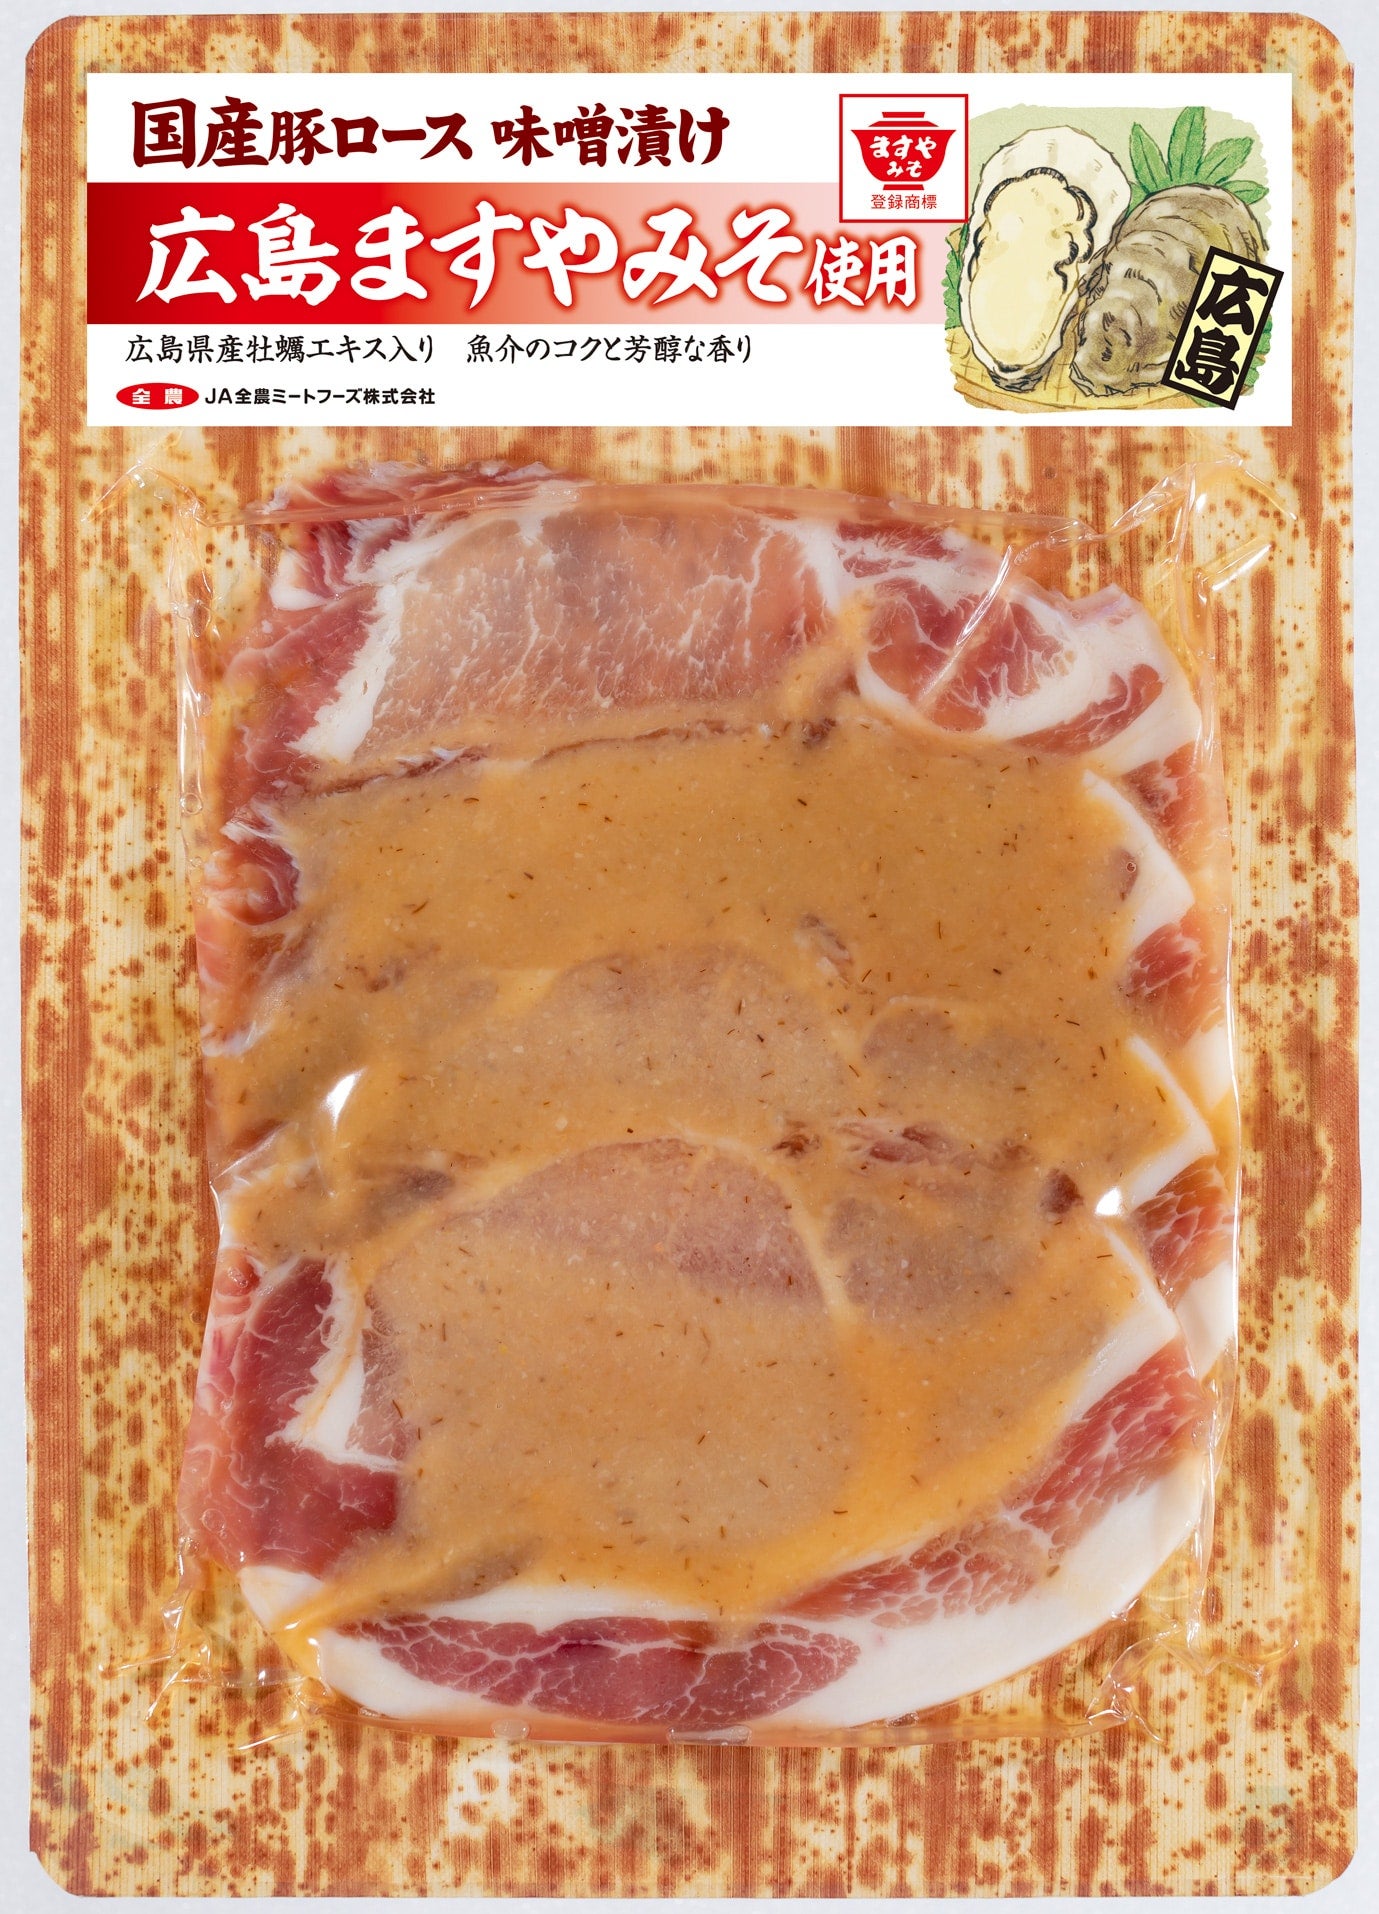 国産豚ロース味噌漬け広島ますやみそ使用林田様専用: お肉の宅配